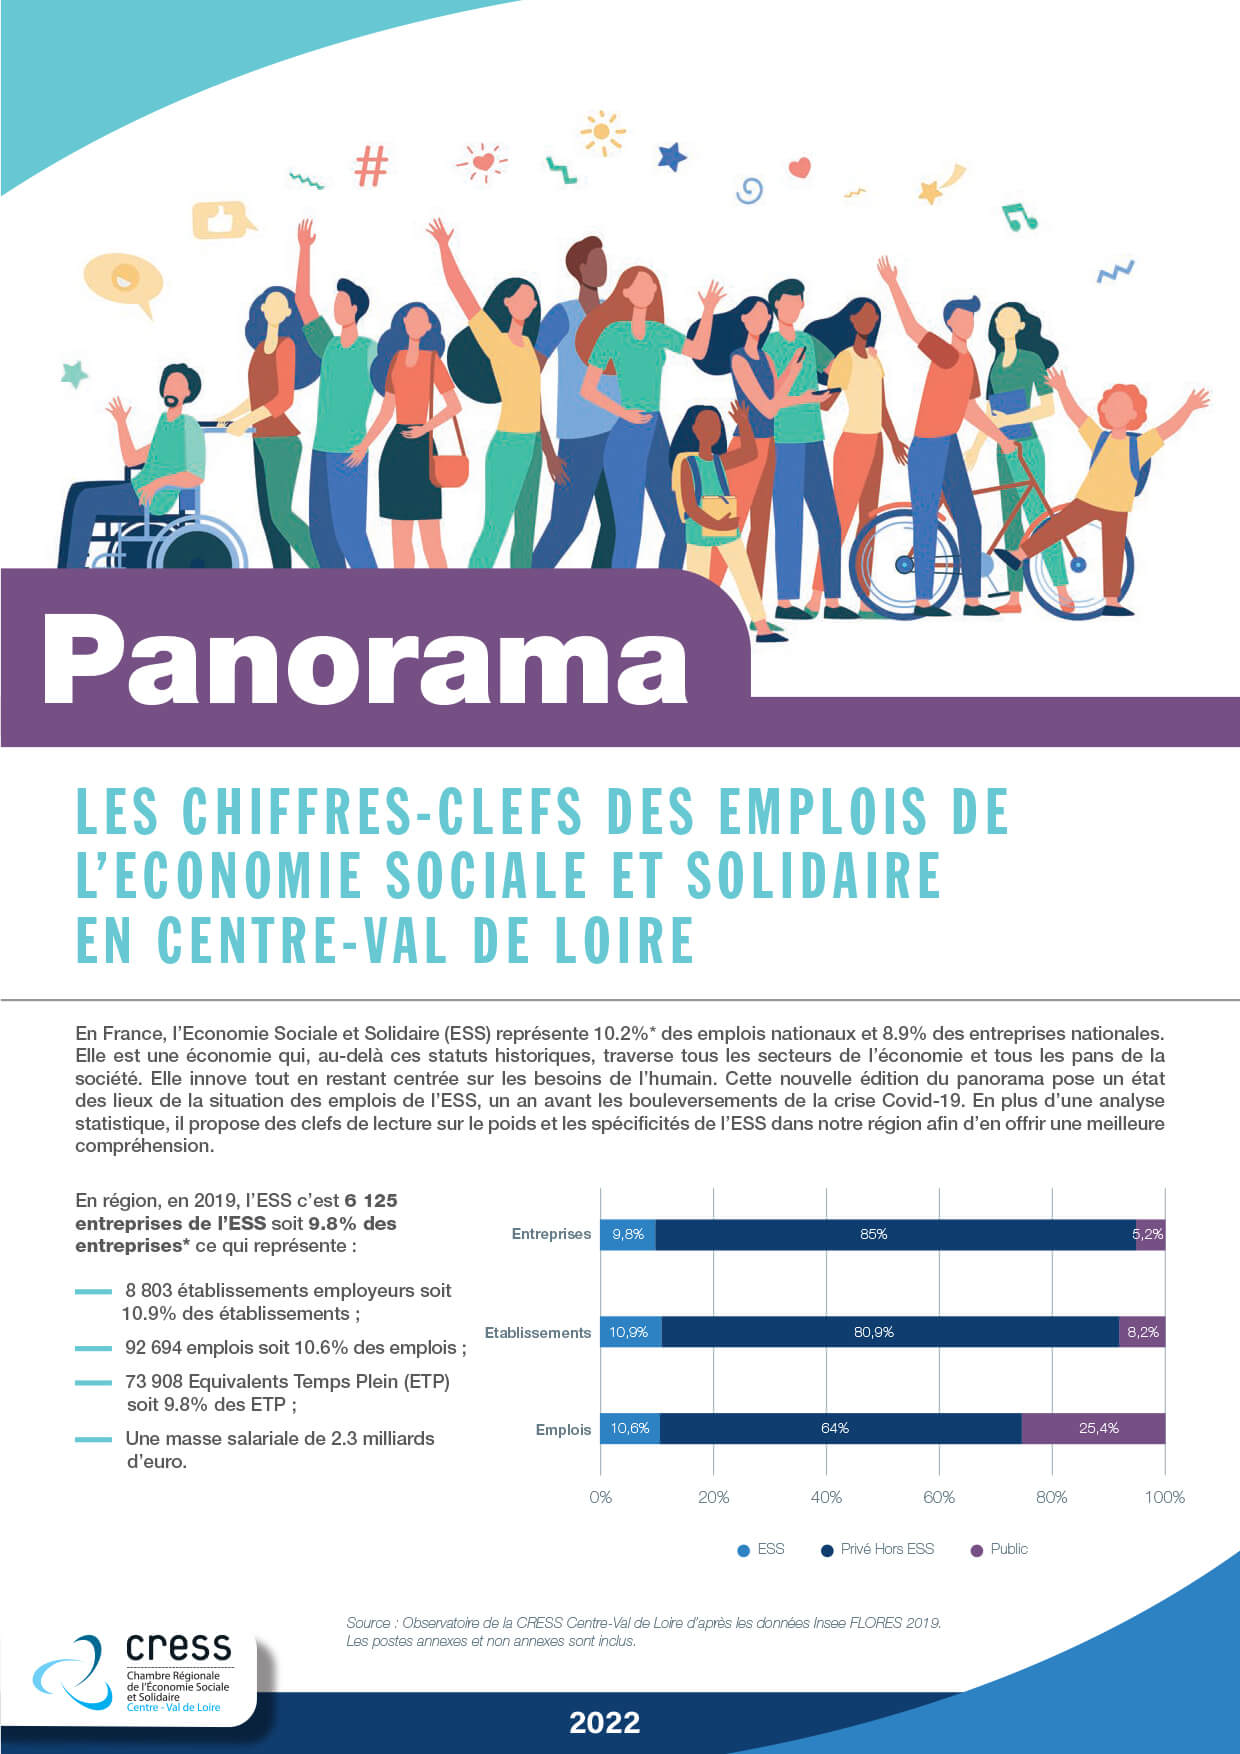 Panorama : les chiffres clés de l’emploi de l’ESS en Centre-Val de Loire